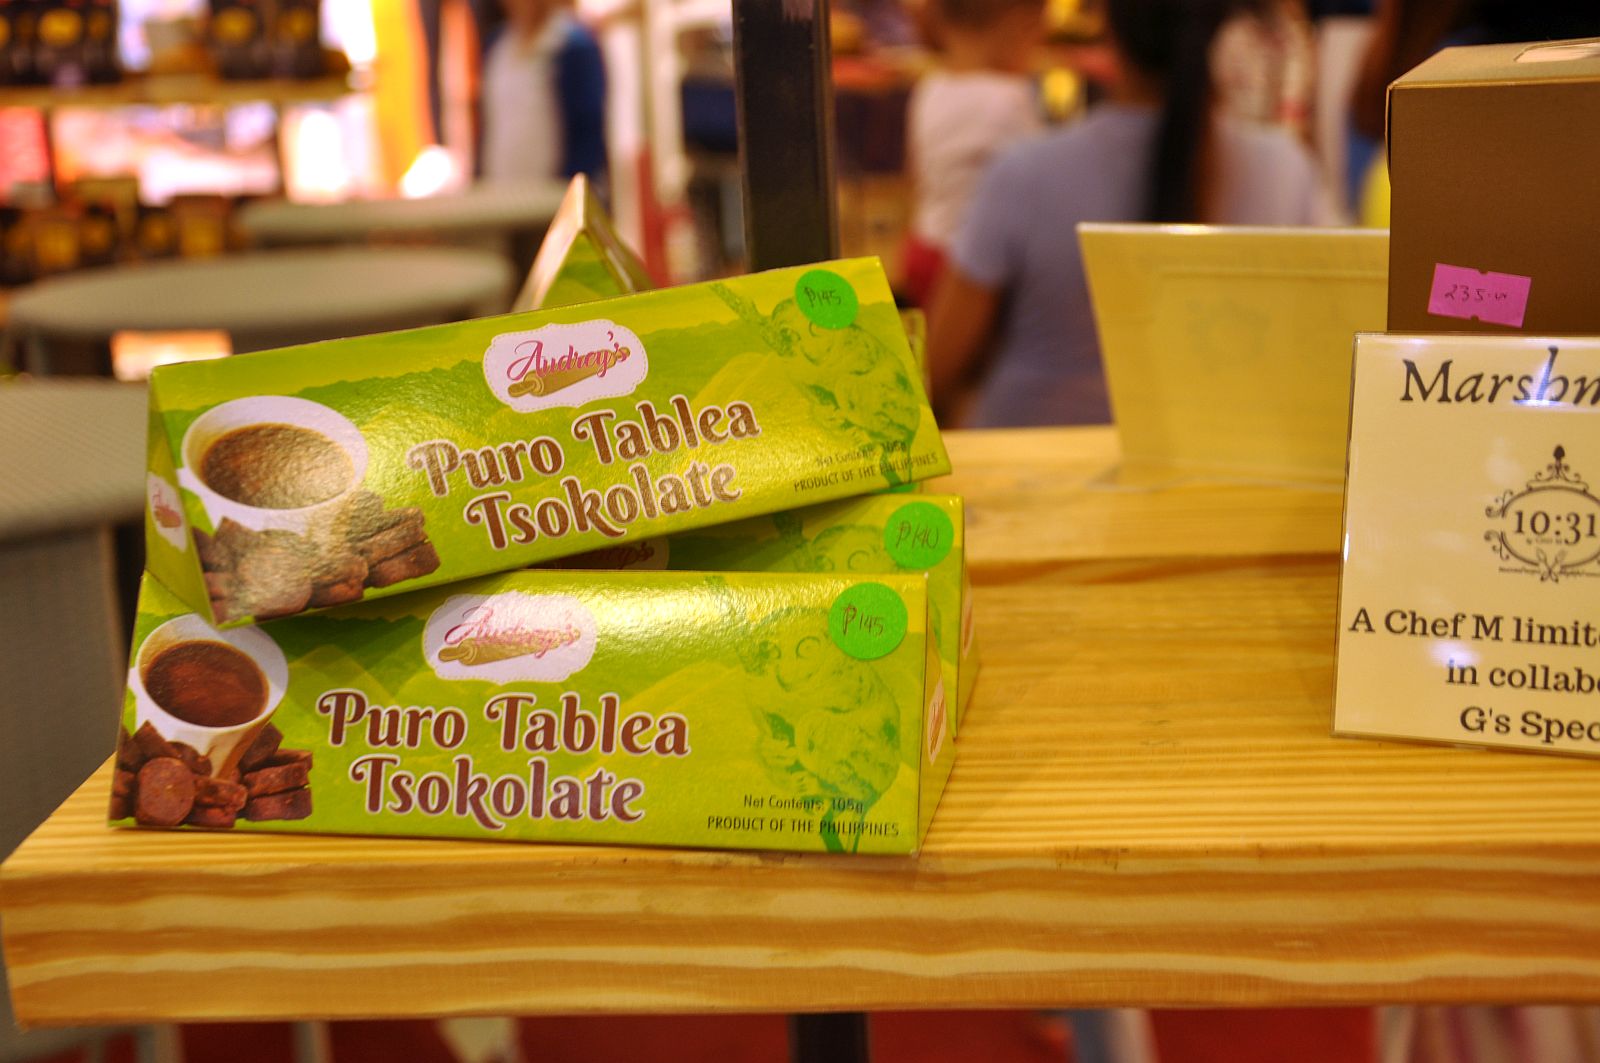 PHILIPPINEN REISEN - Leitfaden zu philippinischer Schokolade